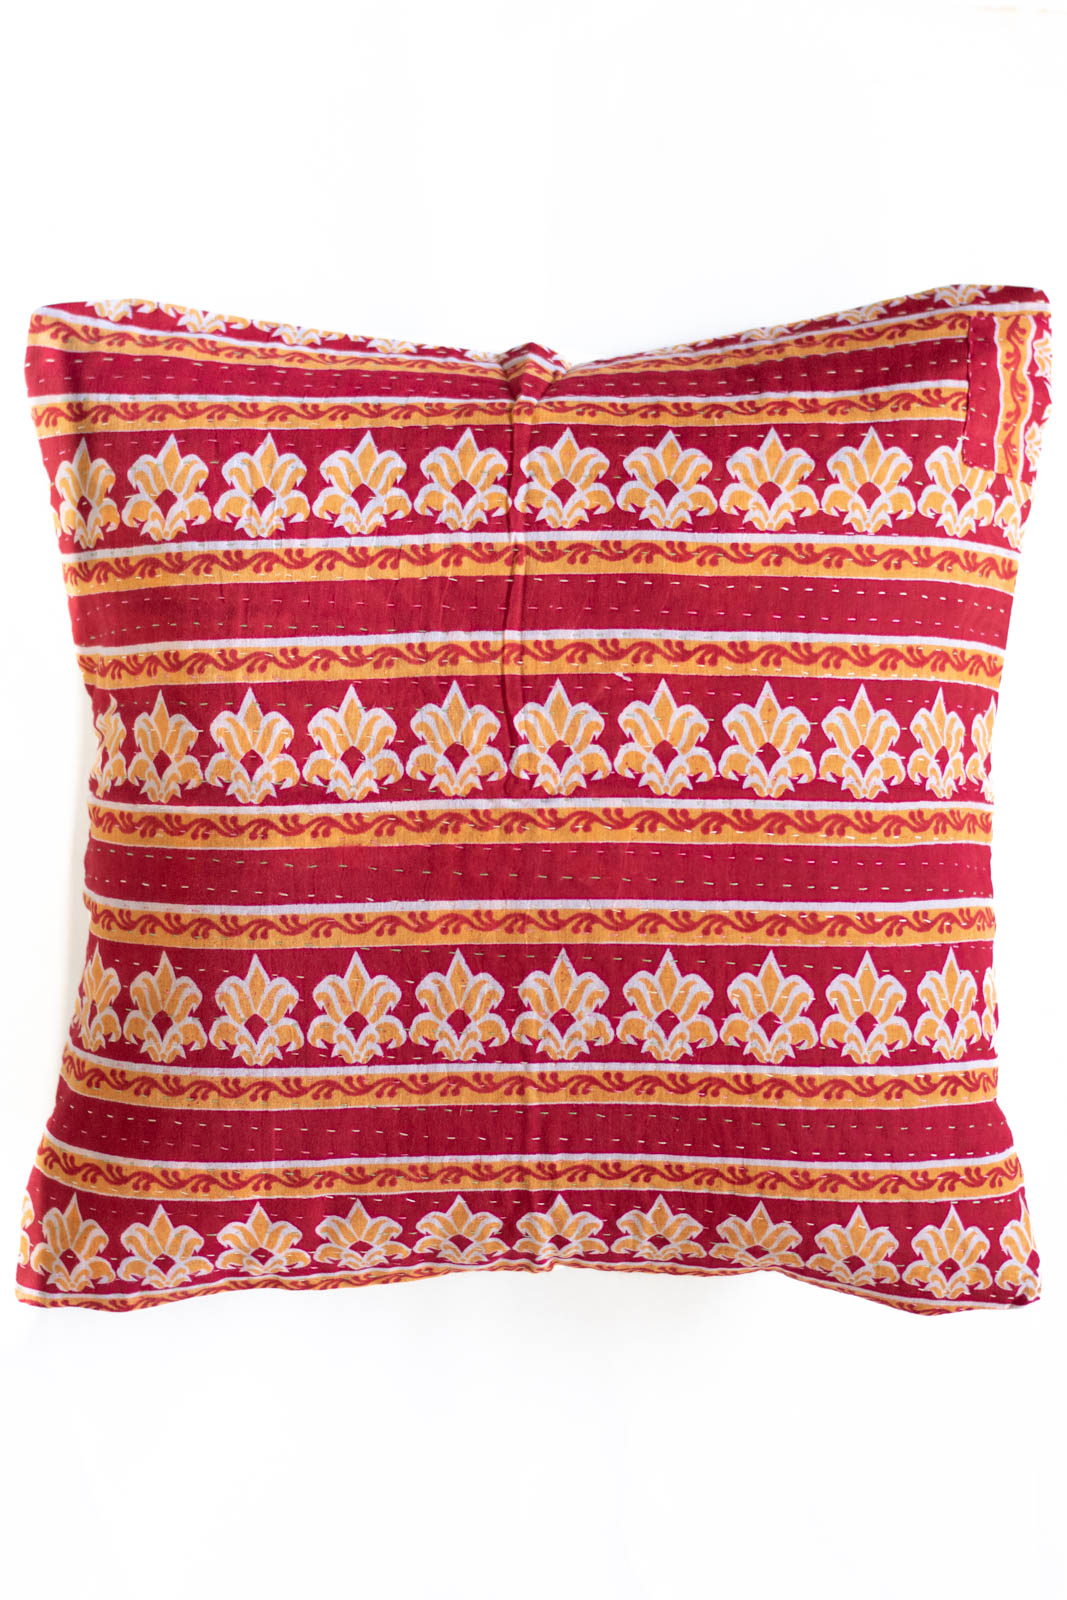 Unique no. 5 Kantha Pillow Cover